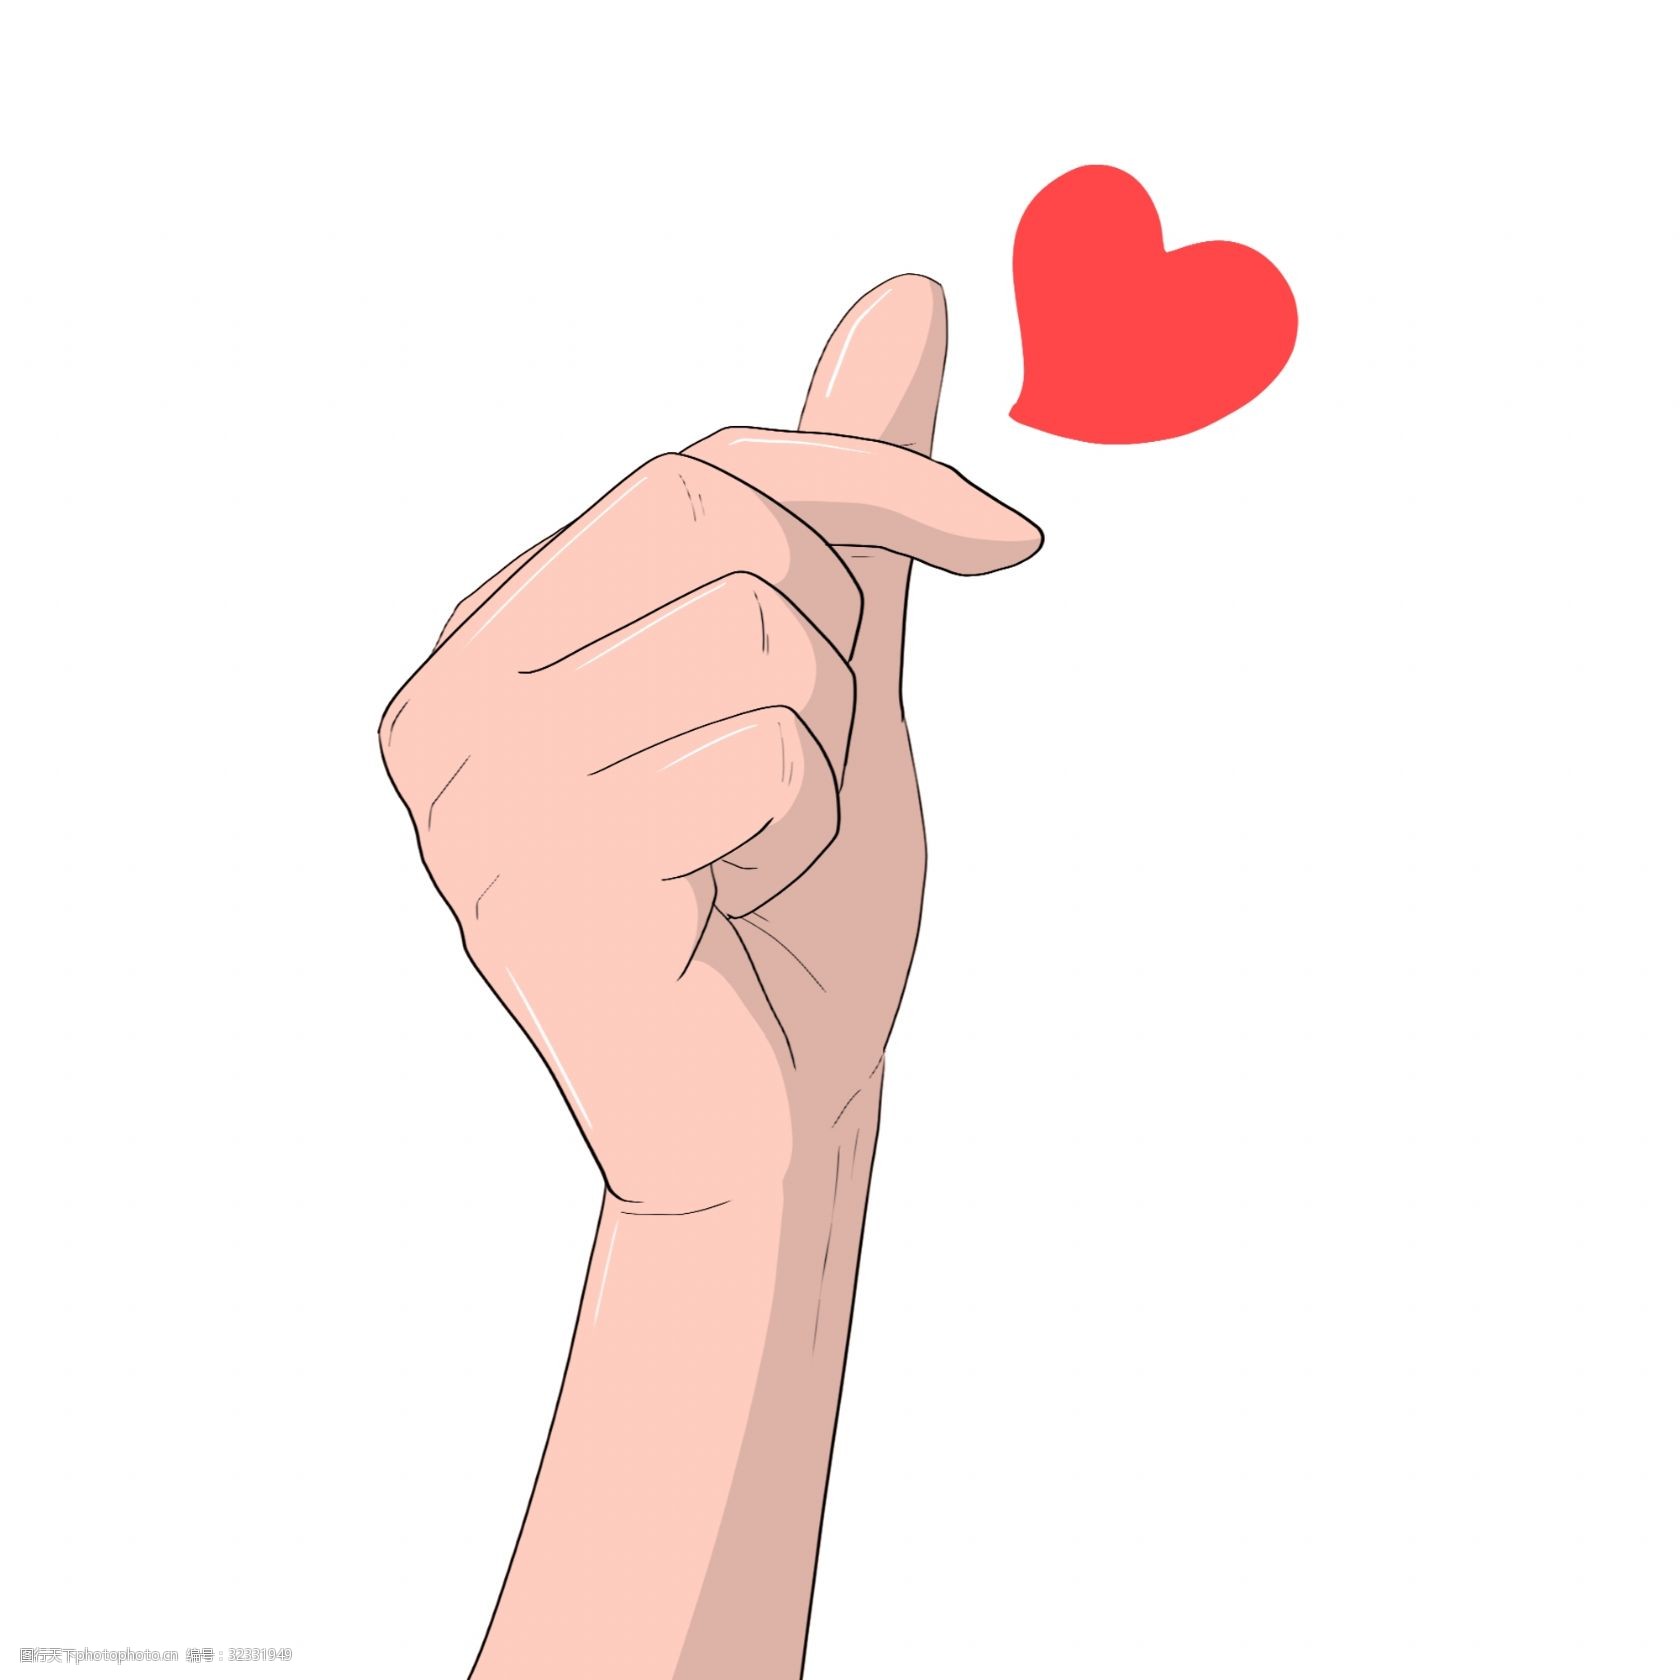 关键词:手绘告白比心手势插画 红色的爱心 表白的手势 卡通插画 手绘